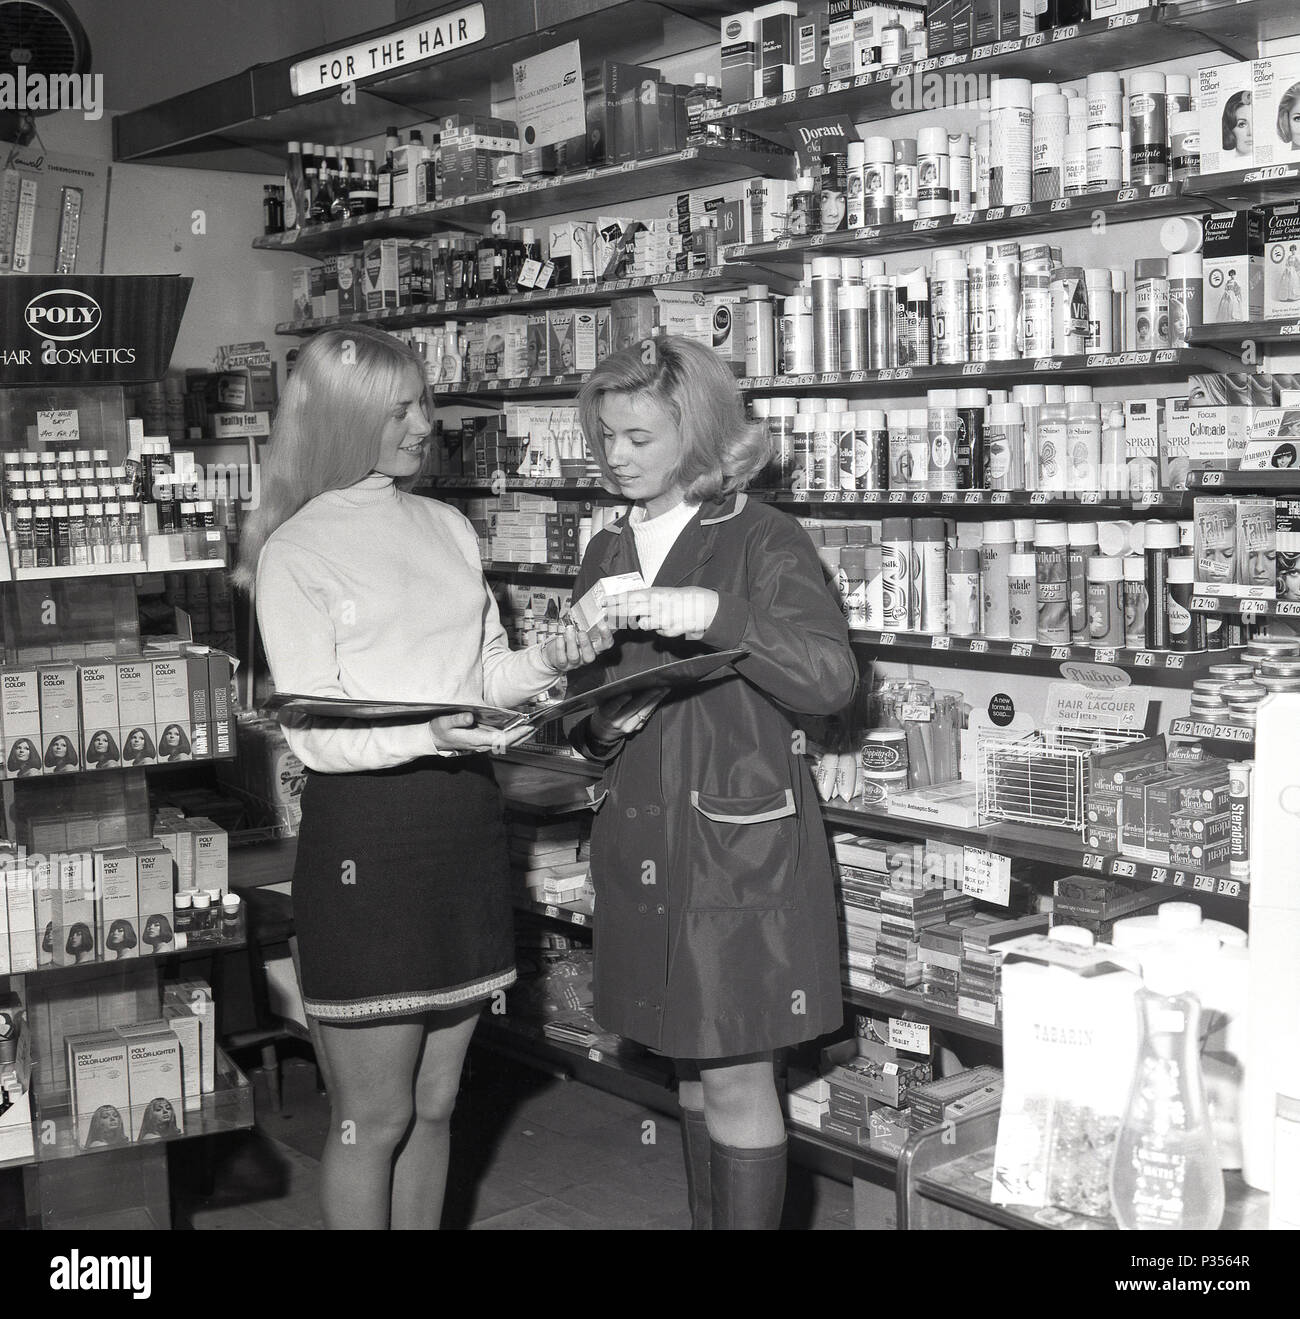 1970, deux jeunes femmes dans une pharmacie, une avec les cheveux longs et portait une jupe courte, montrant l'autre, dans un rainmac, la gamme de cosmétiques et de produits de cheveux disponibles, England, UK. Banque D'Images